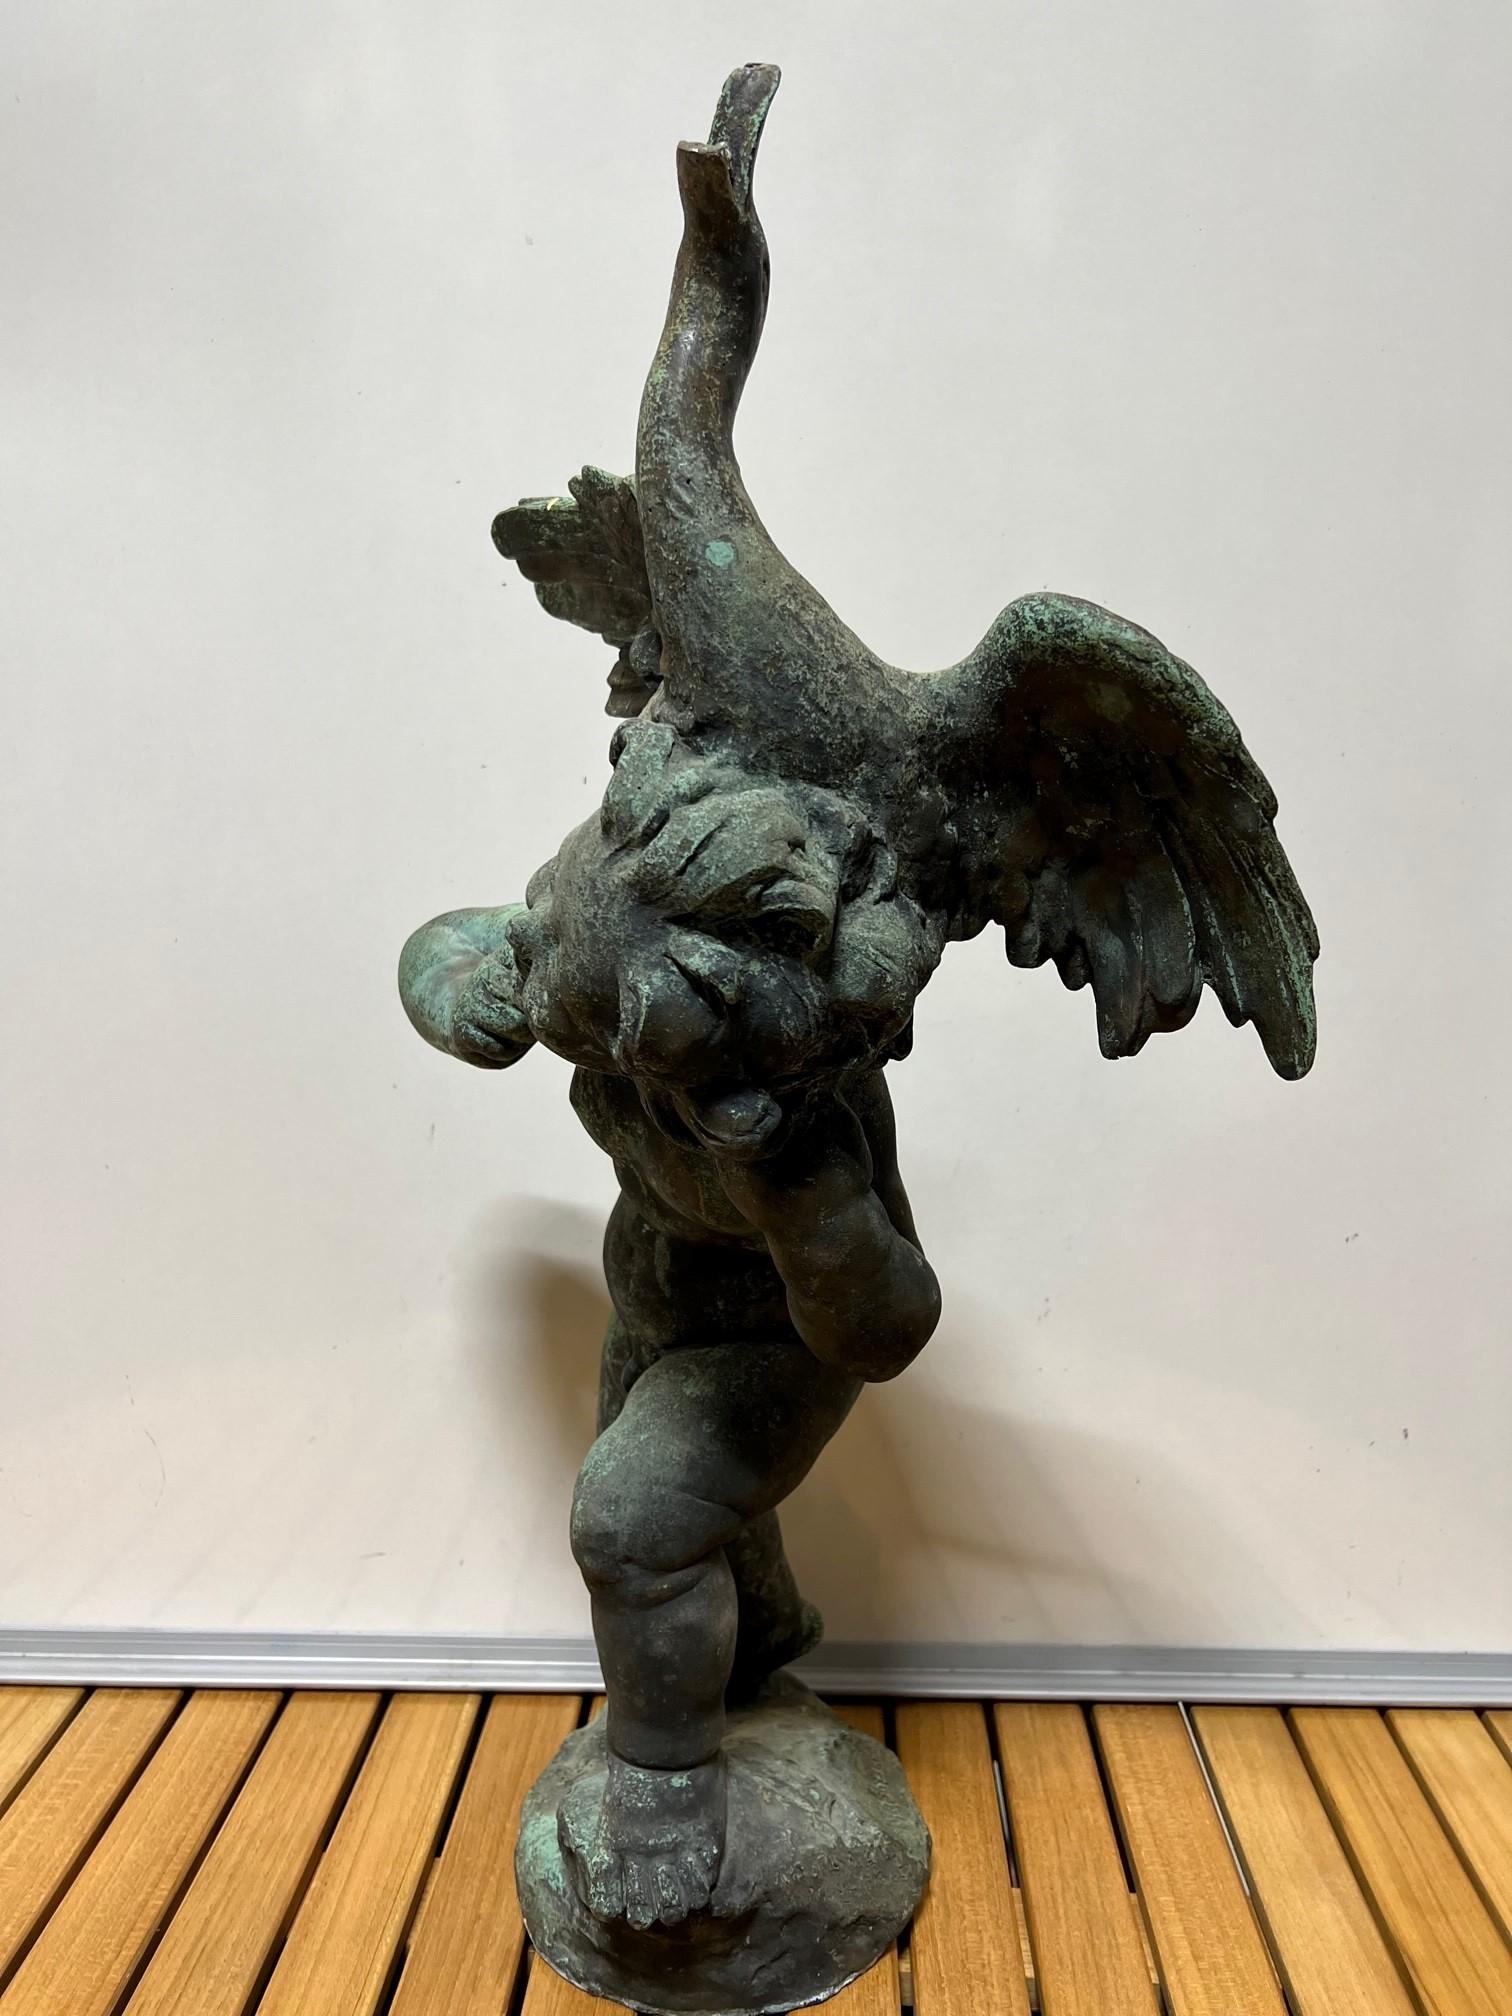 Bronzeknabe aus dem frühen 20. Jahrhundert, der eine Gans um den Hals trägt. Dies ist eine großartige Gartenstatue. Das Gesicht des Jungen strahlt vor Aufregung, während er die Gans trägt. Diese bezaubernde Bronzestatue wurde um 1900 in Frankreich